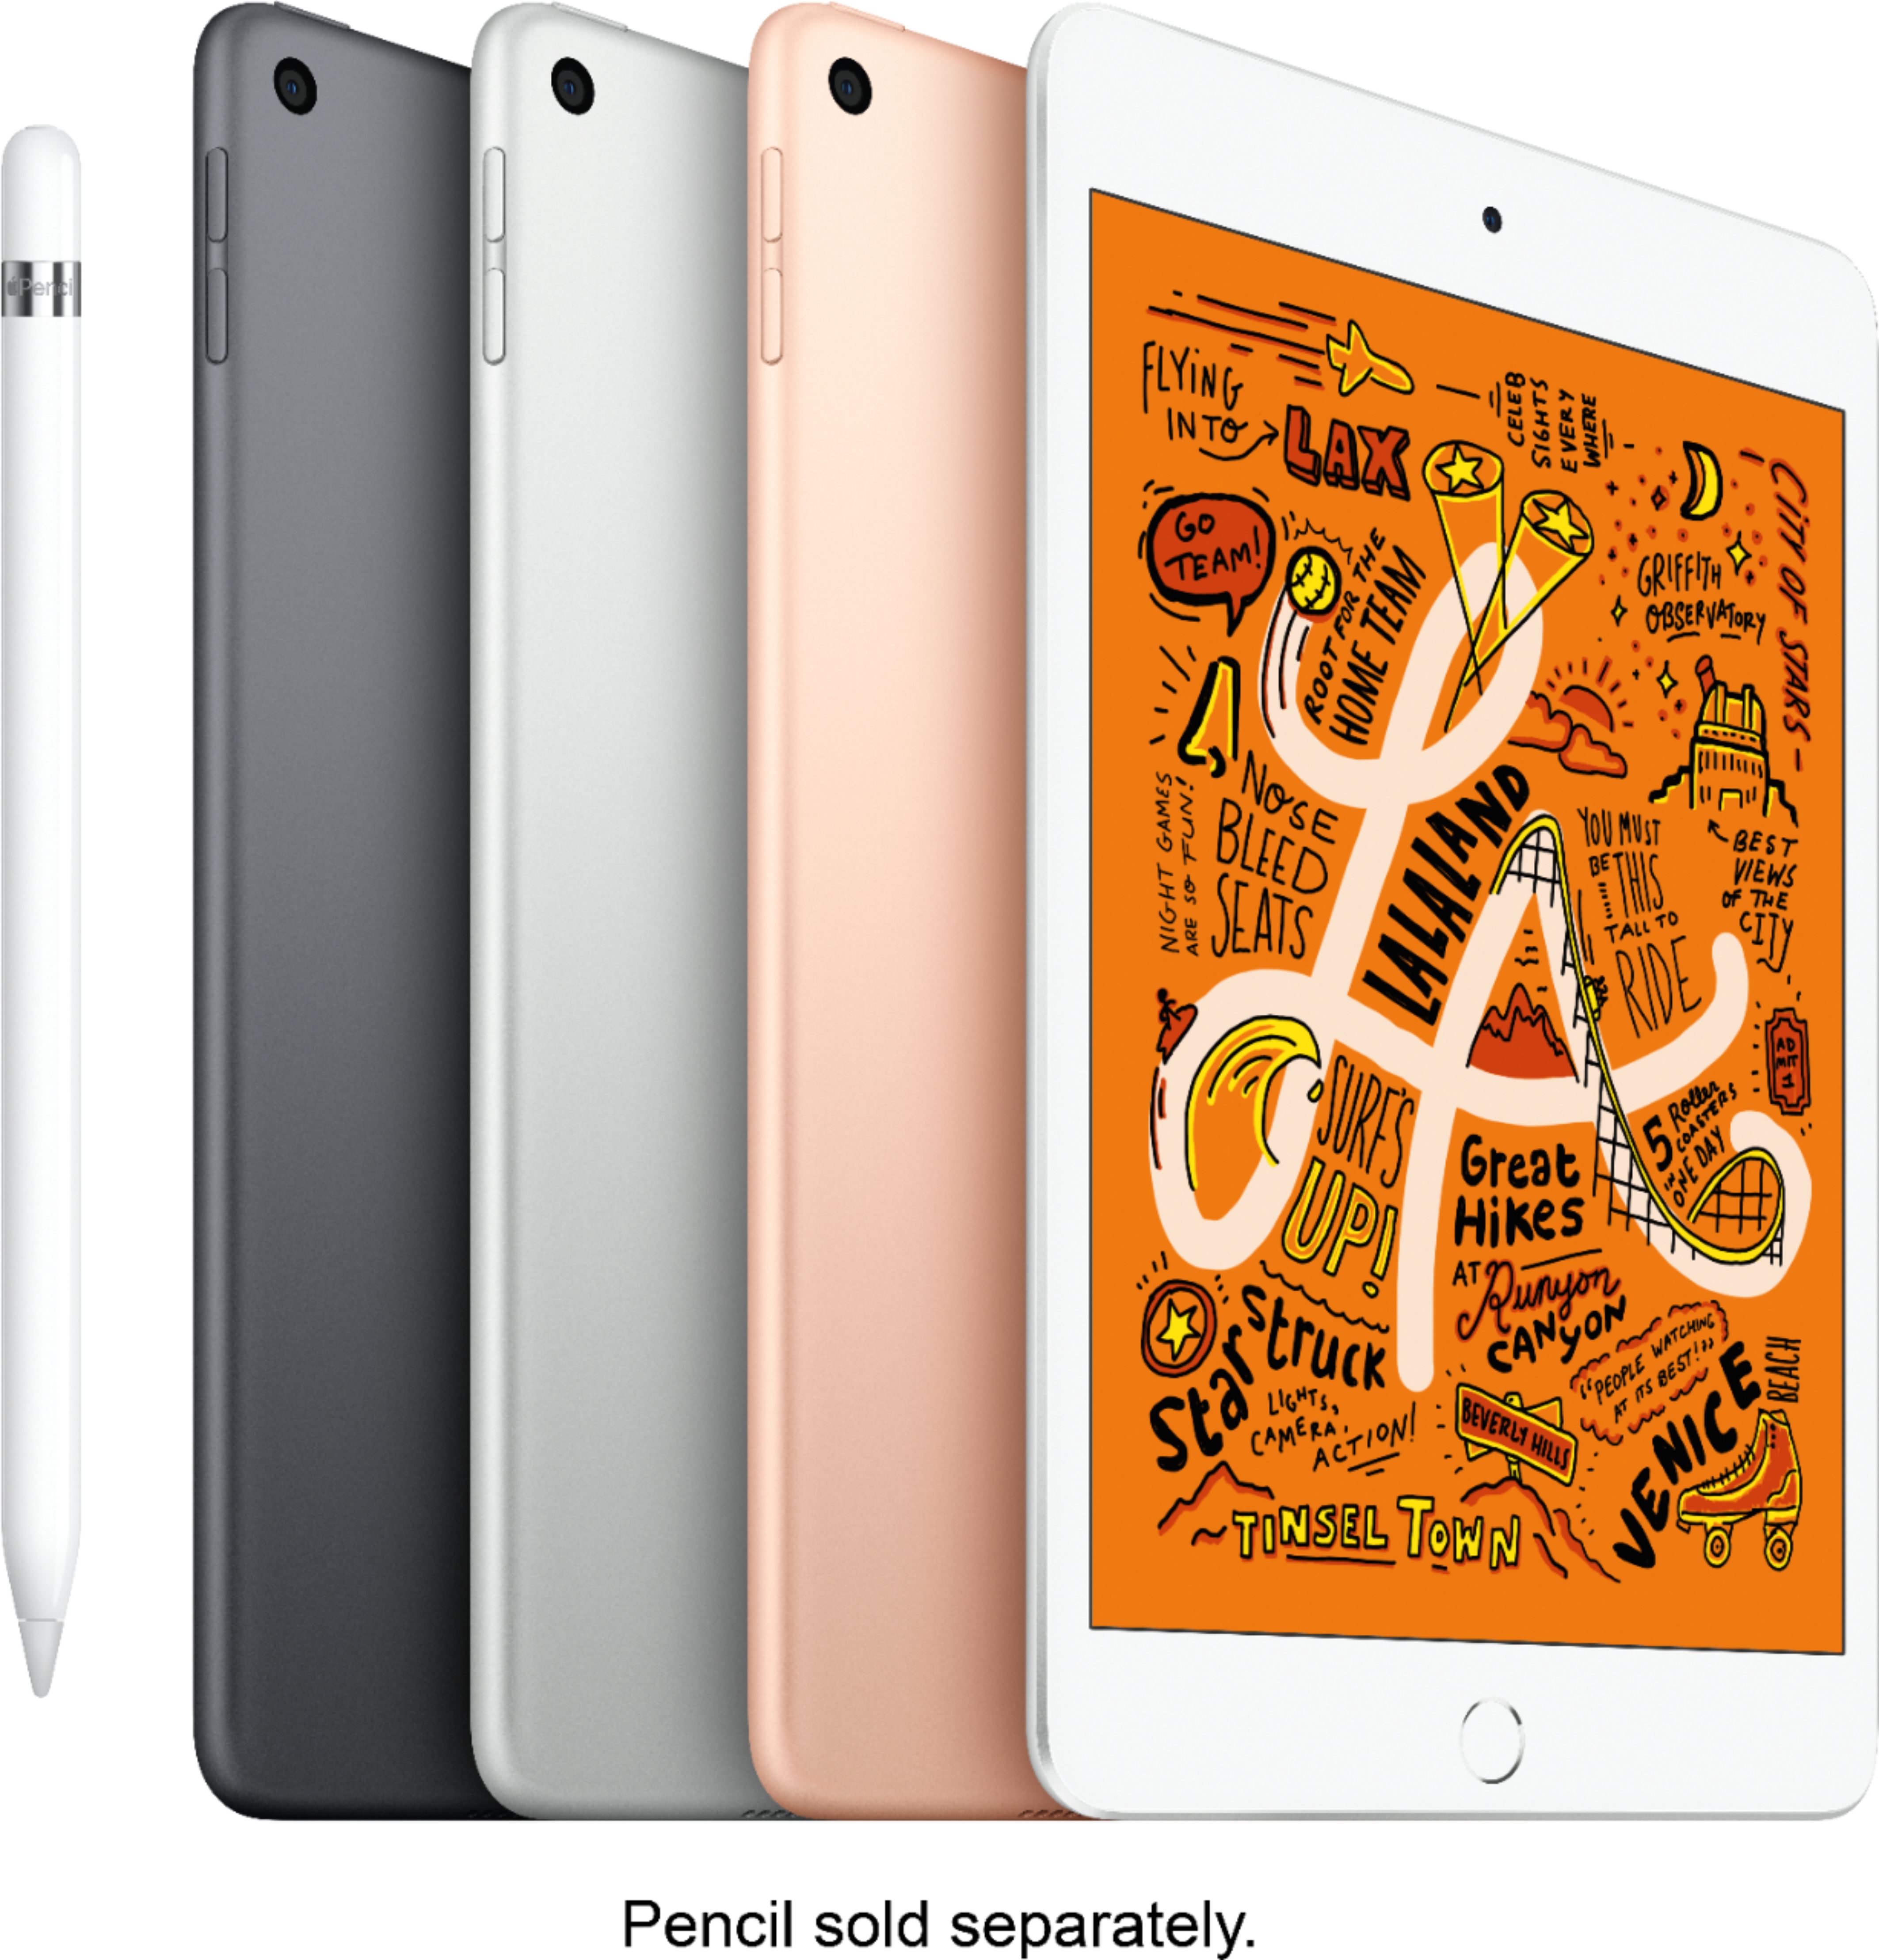 国内正規  5スペースグレイ mini iPad APPLE タブレット